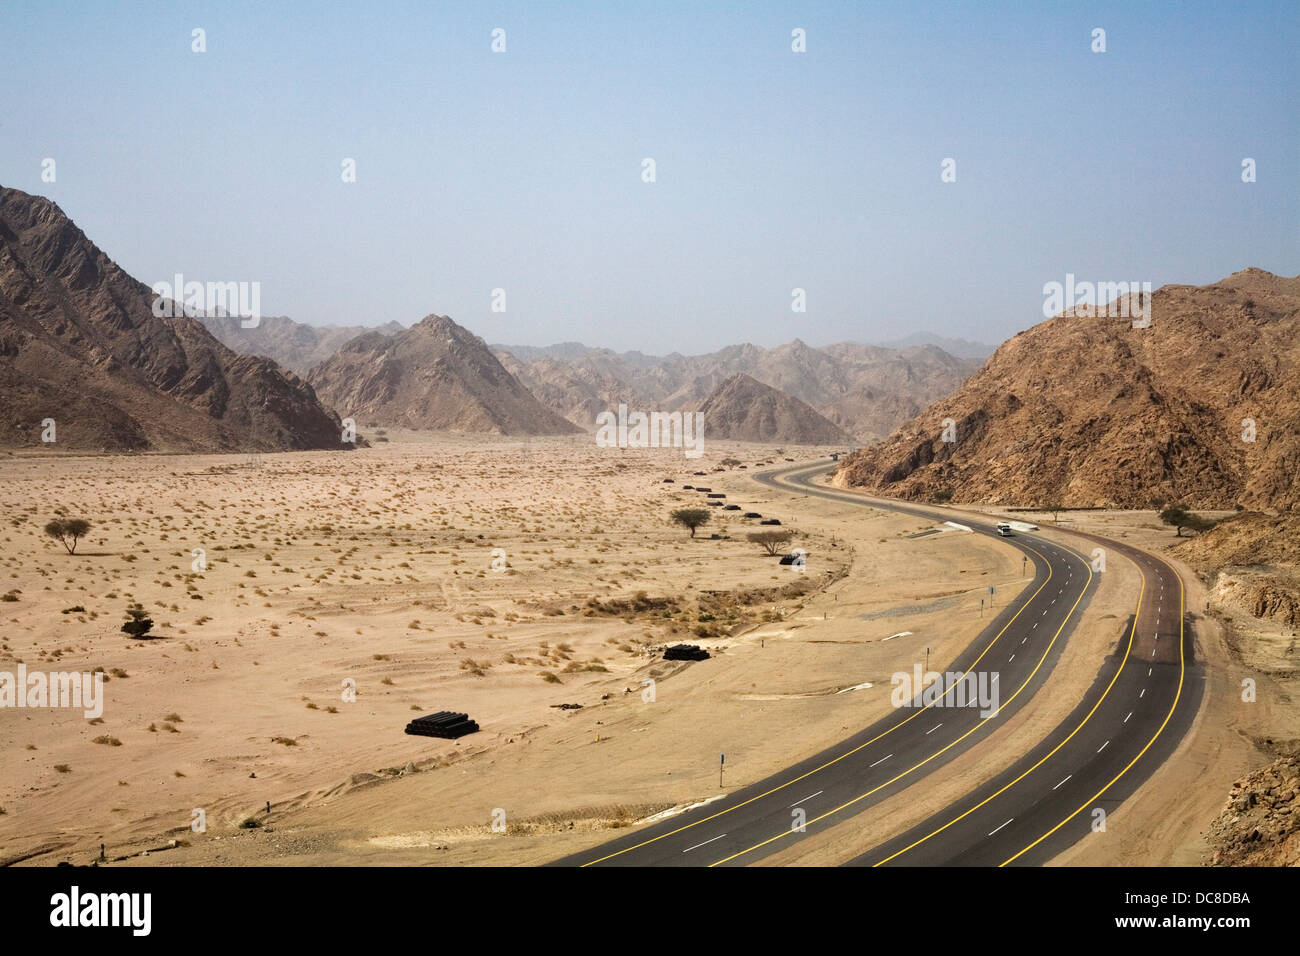 Le Duba-Haql 5 numéro de l'autoroute en passant par les monts Sarawat, au nord-ouest de l'Arabie Saoudite. Banque D'Images